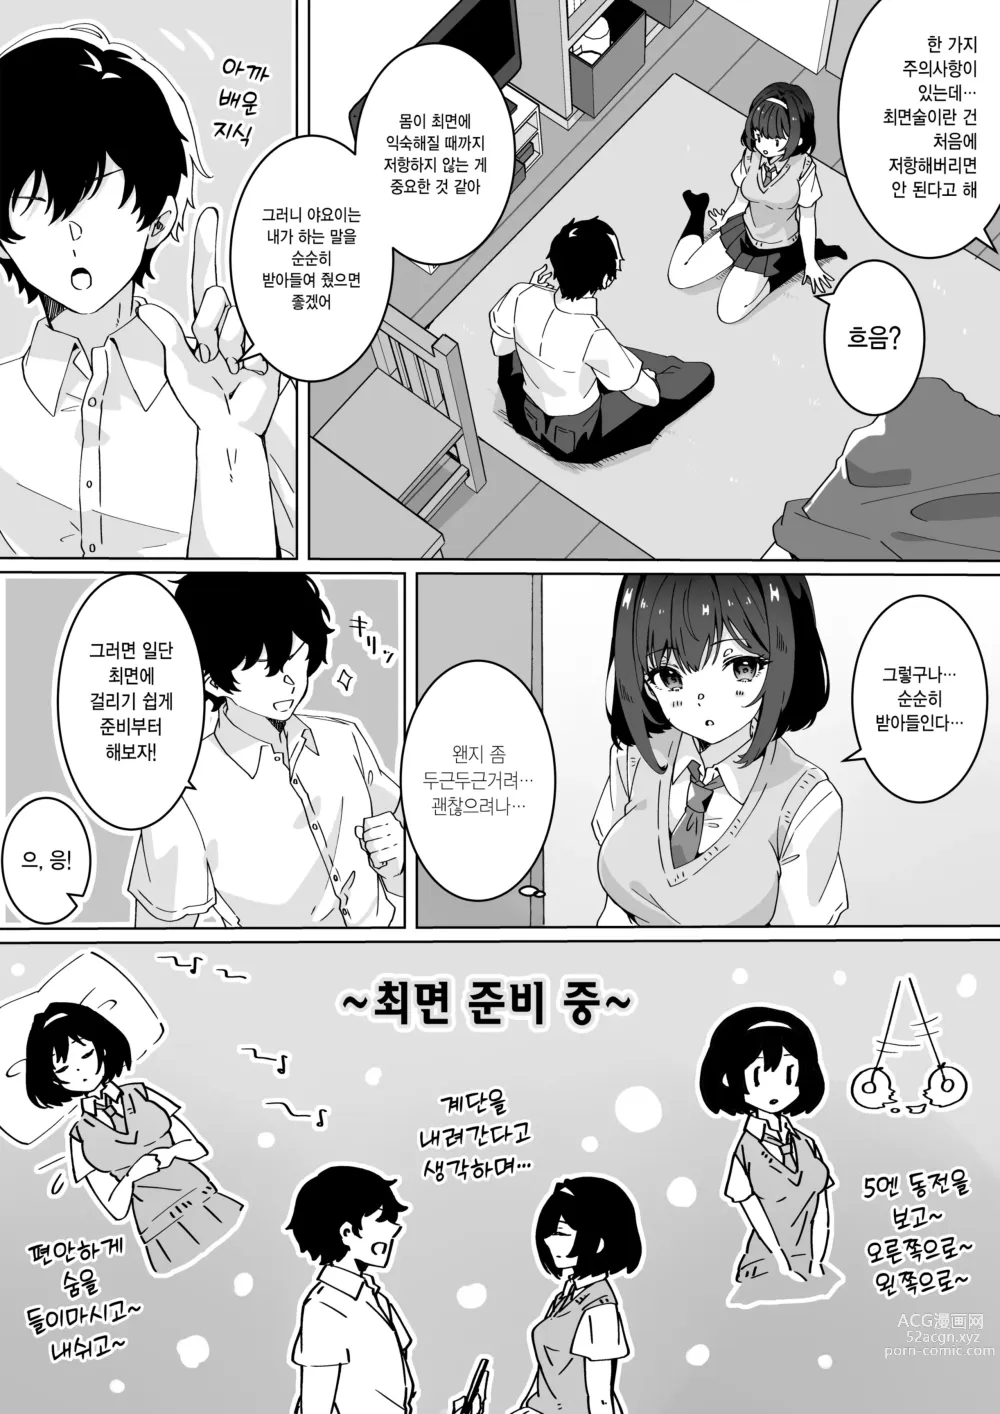 Page 6 of doujinshi 최면술이라면 거유 JK에게 무엇이든 할 수 있다는 게 정말인가요?